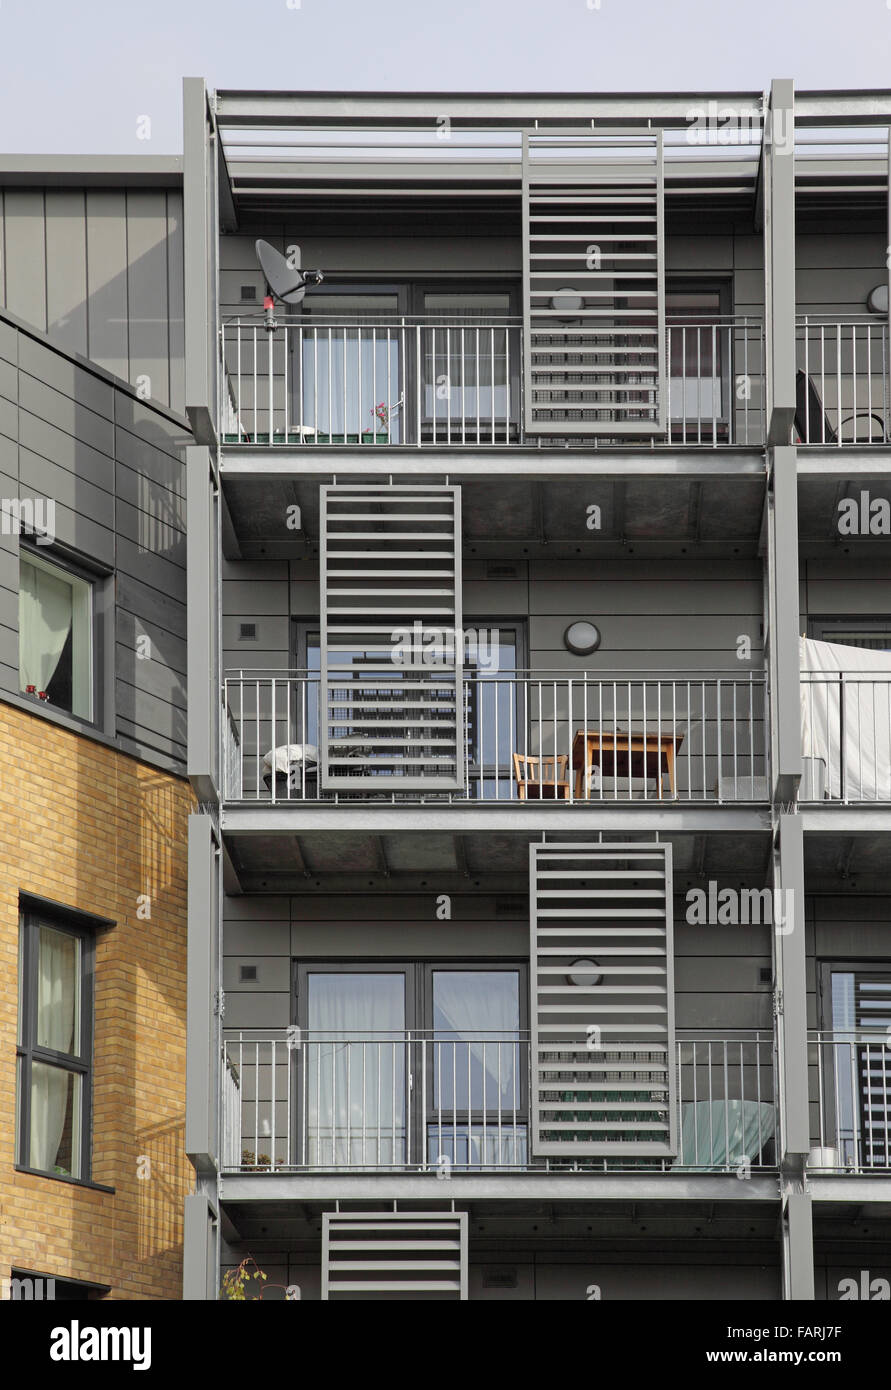 Stahl Balkon auf einem 5-geschossigen Wohngebäude in Hackney, London.Shows strukturellen Stahlrahmen, Stahl-Lamellen und Zink-Verkleidung Stockfoto